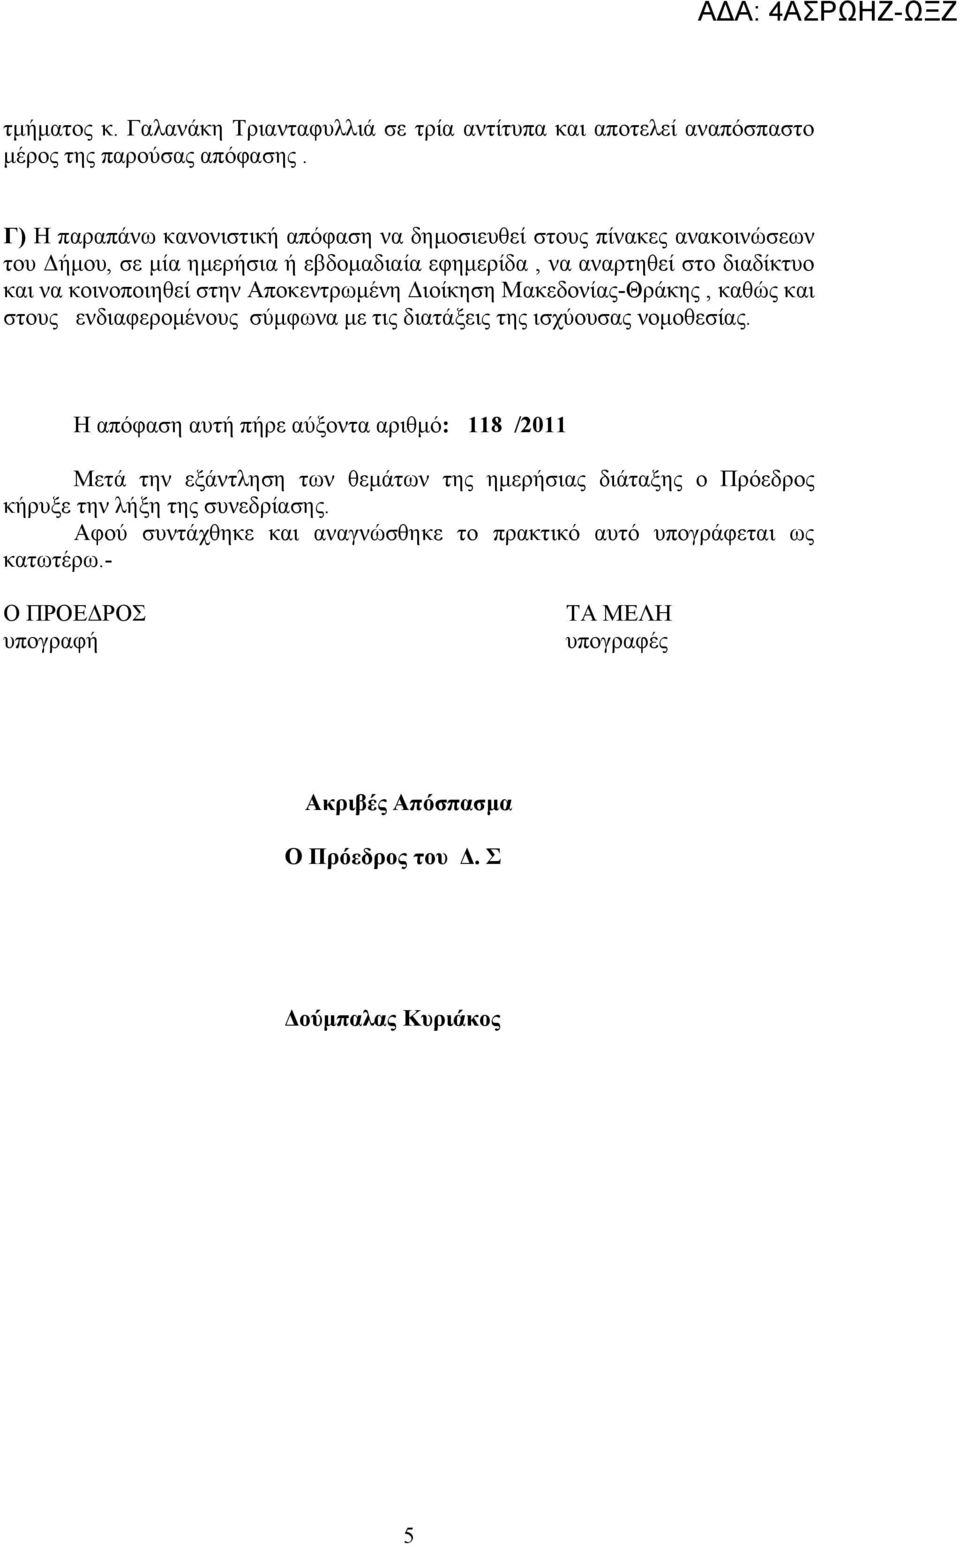 Αποκεντρωμένη Διοίκηση Μακεδονίας-Θράκης, καθώς και στους ενδιαφερομένους σύμφωνα με τις διατάξεις της ισχύουσας νομοθεσίας.